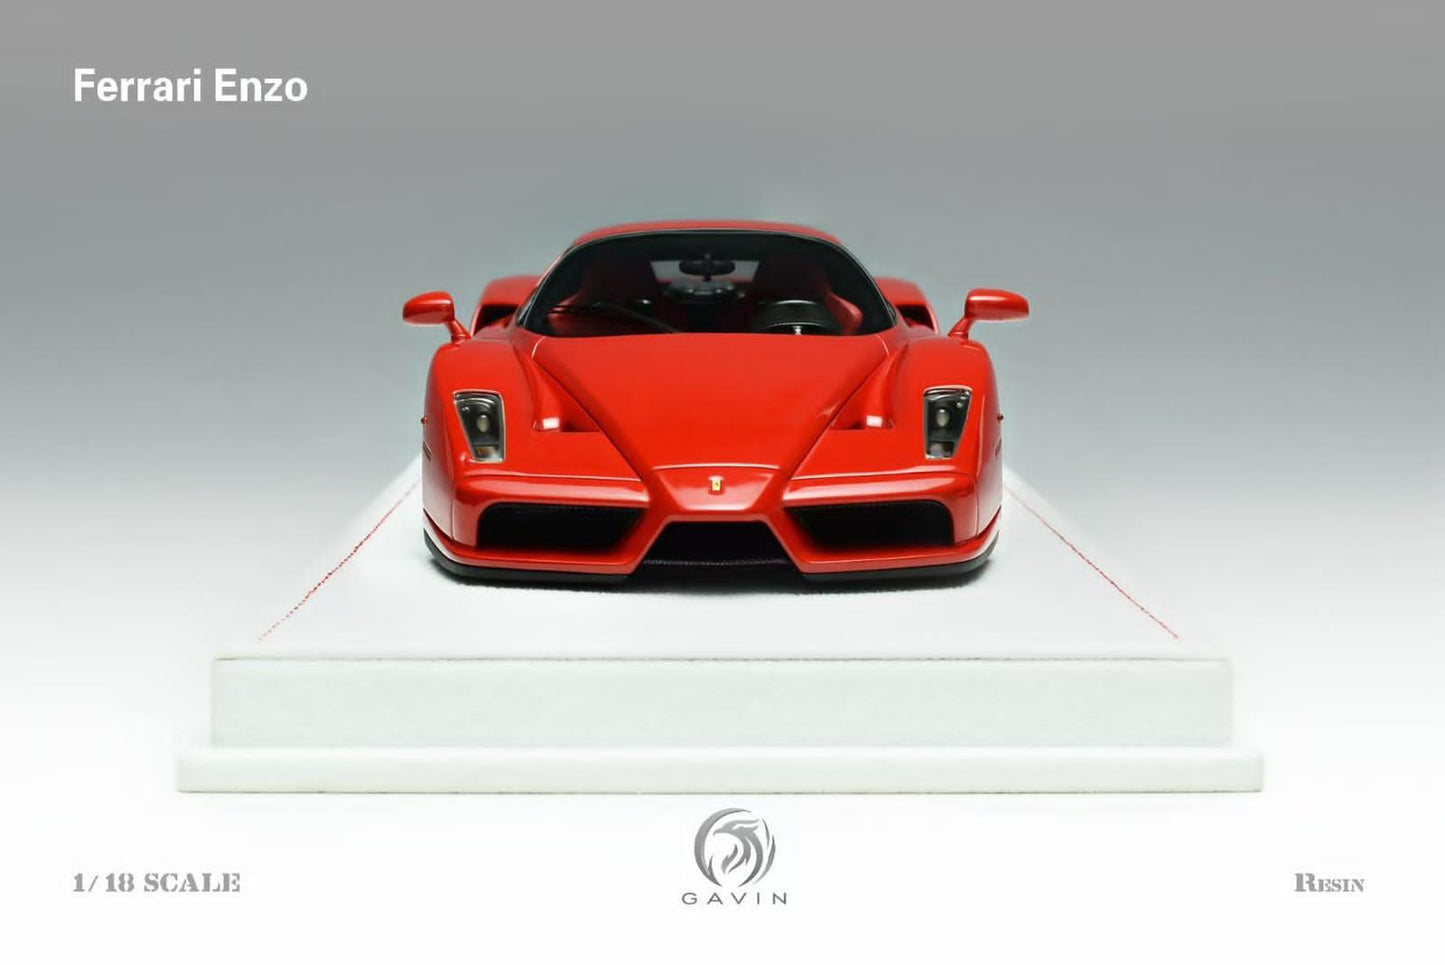 Gavin Ferrari Enzo 1/18